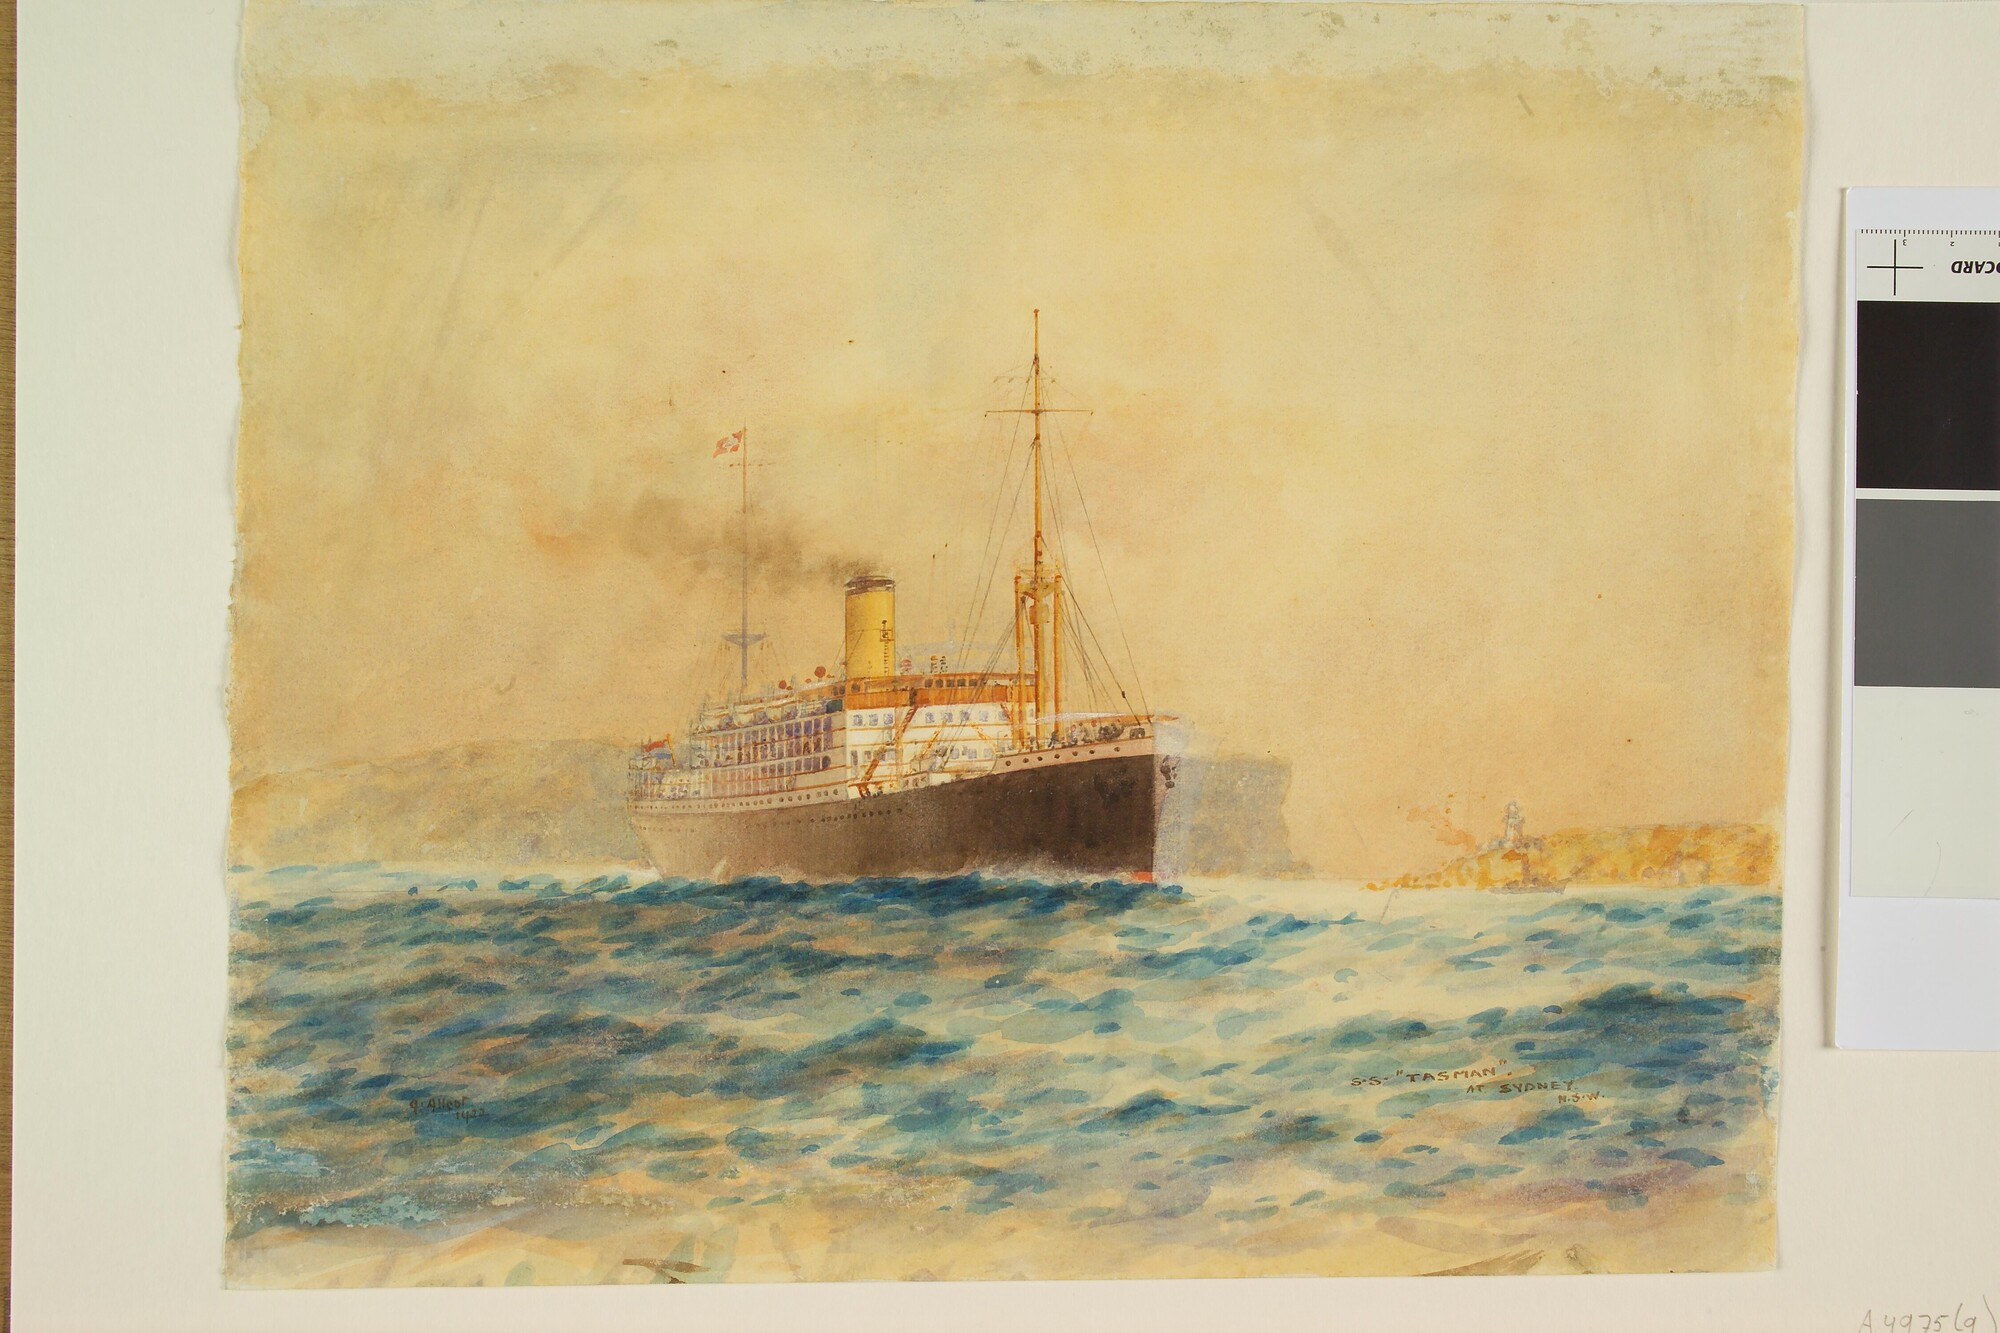 A.4975(09); Het passagiersschip 'Abel Tasman' van de KPM; tekening